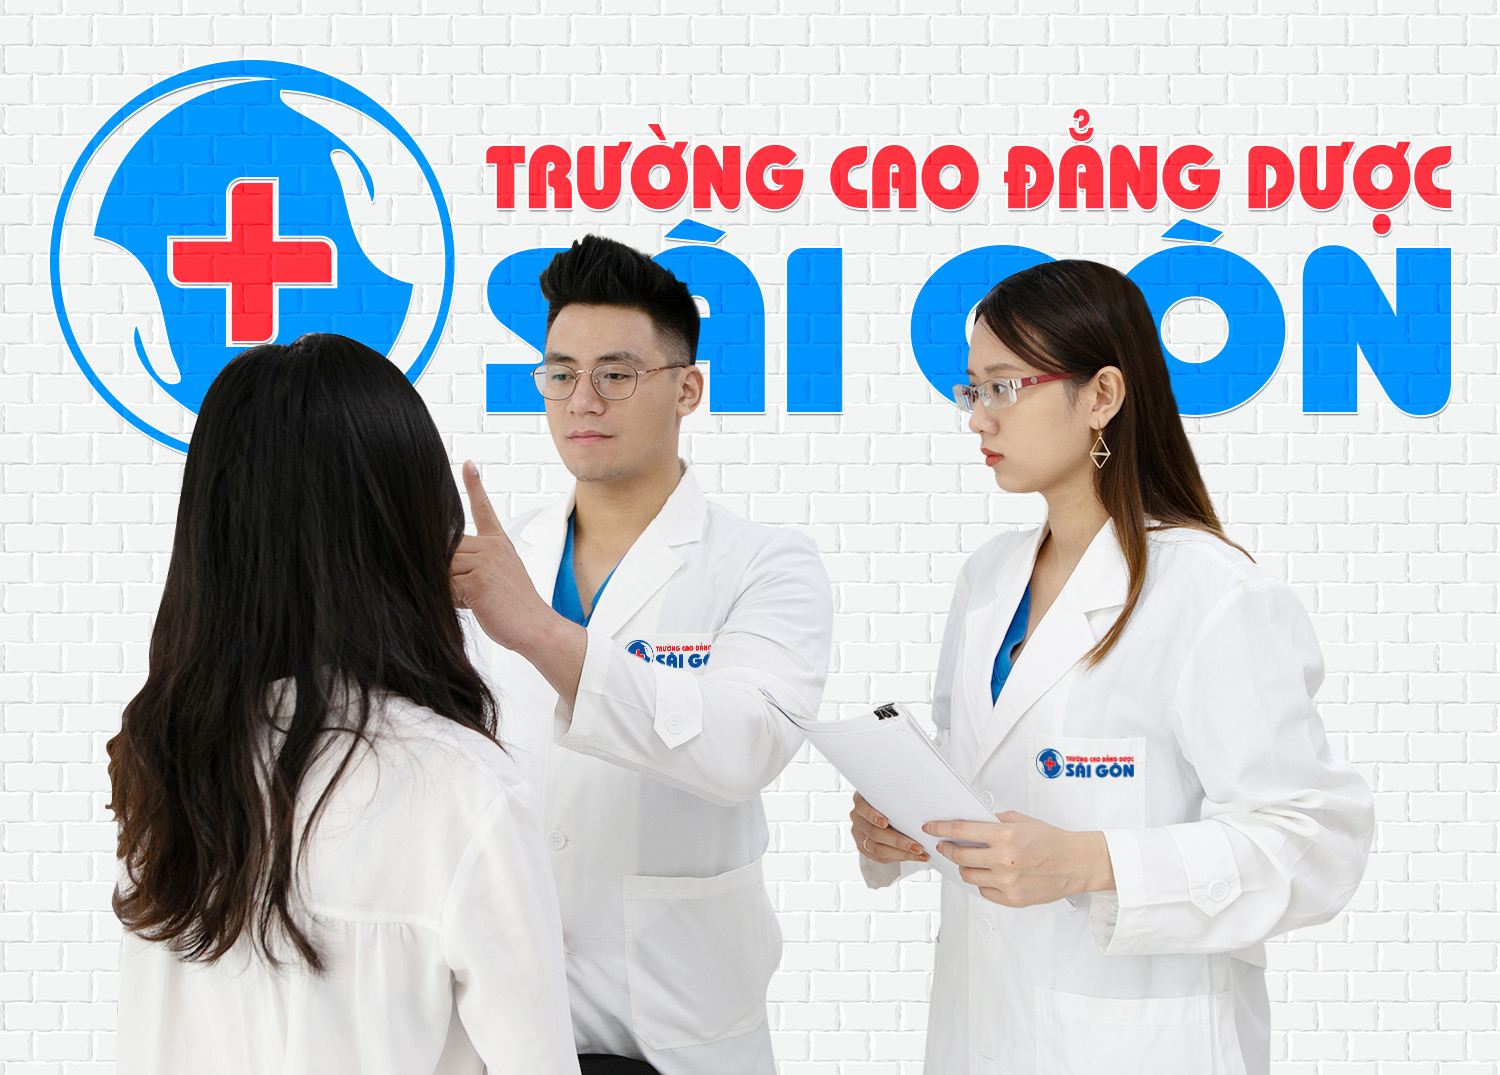 Chuyên gia Dược Sài Gòn nói gì về vi khuẩn HP?